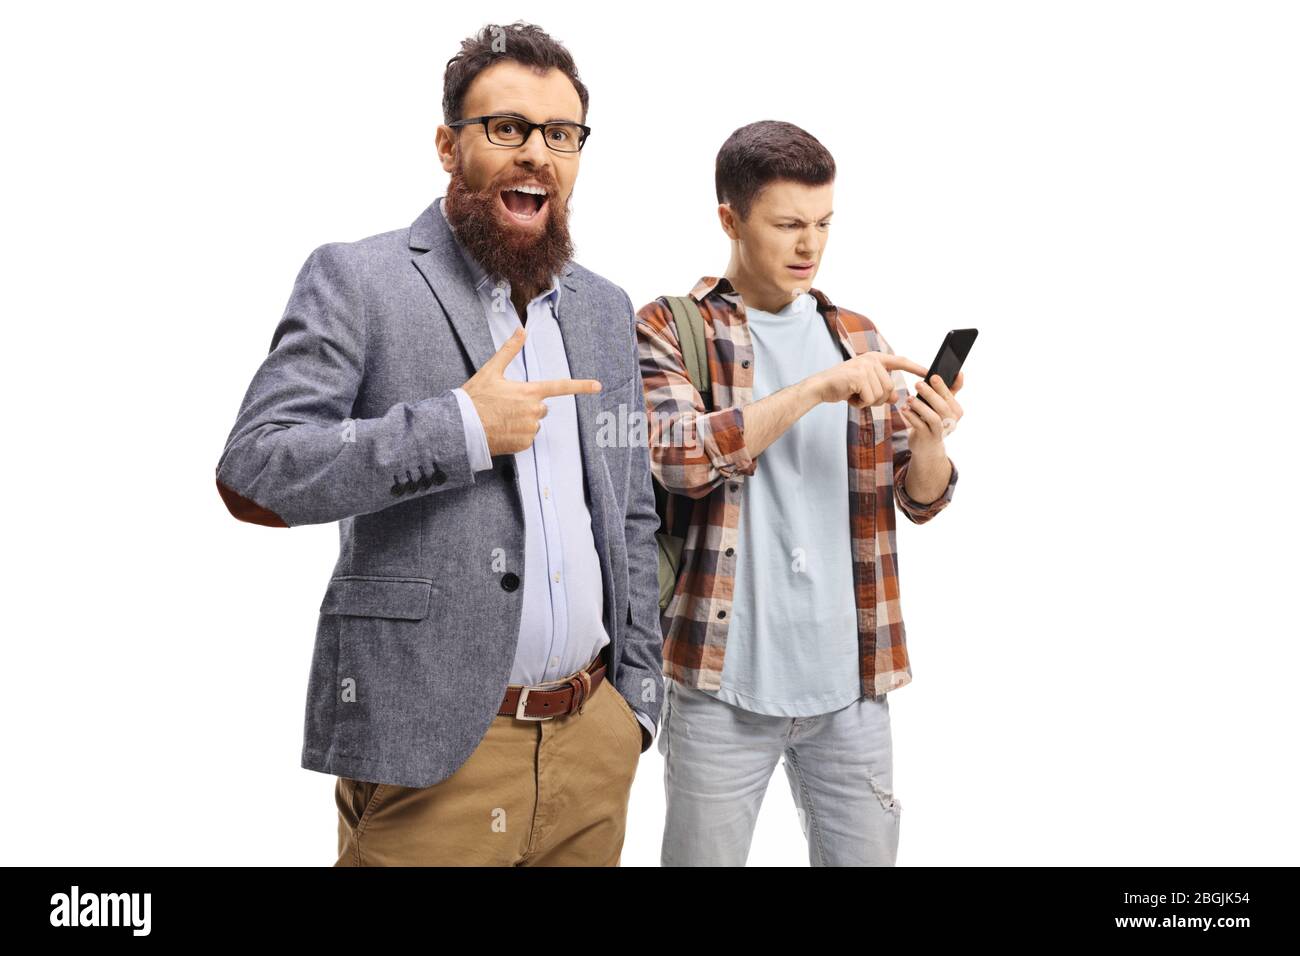 Uomo bearded ridendo e indicando un adolescente usando un telefono cellulare isolato su sfondo bianco Foto Stock